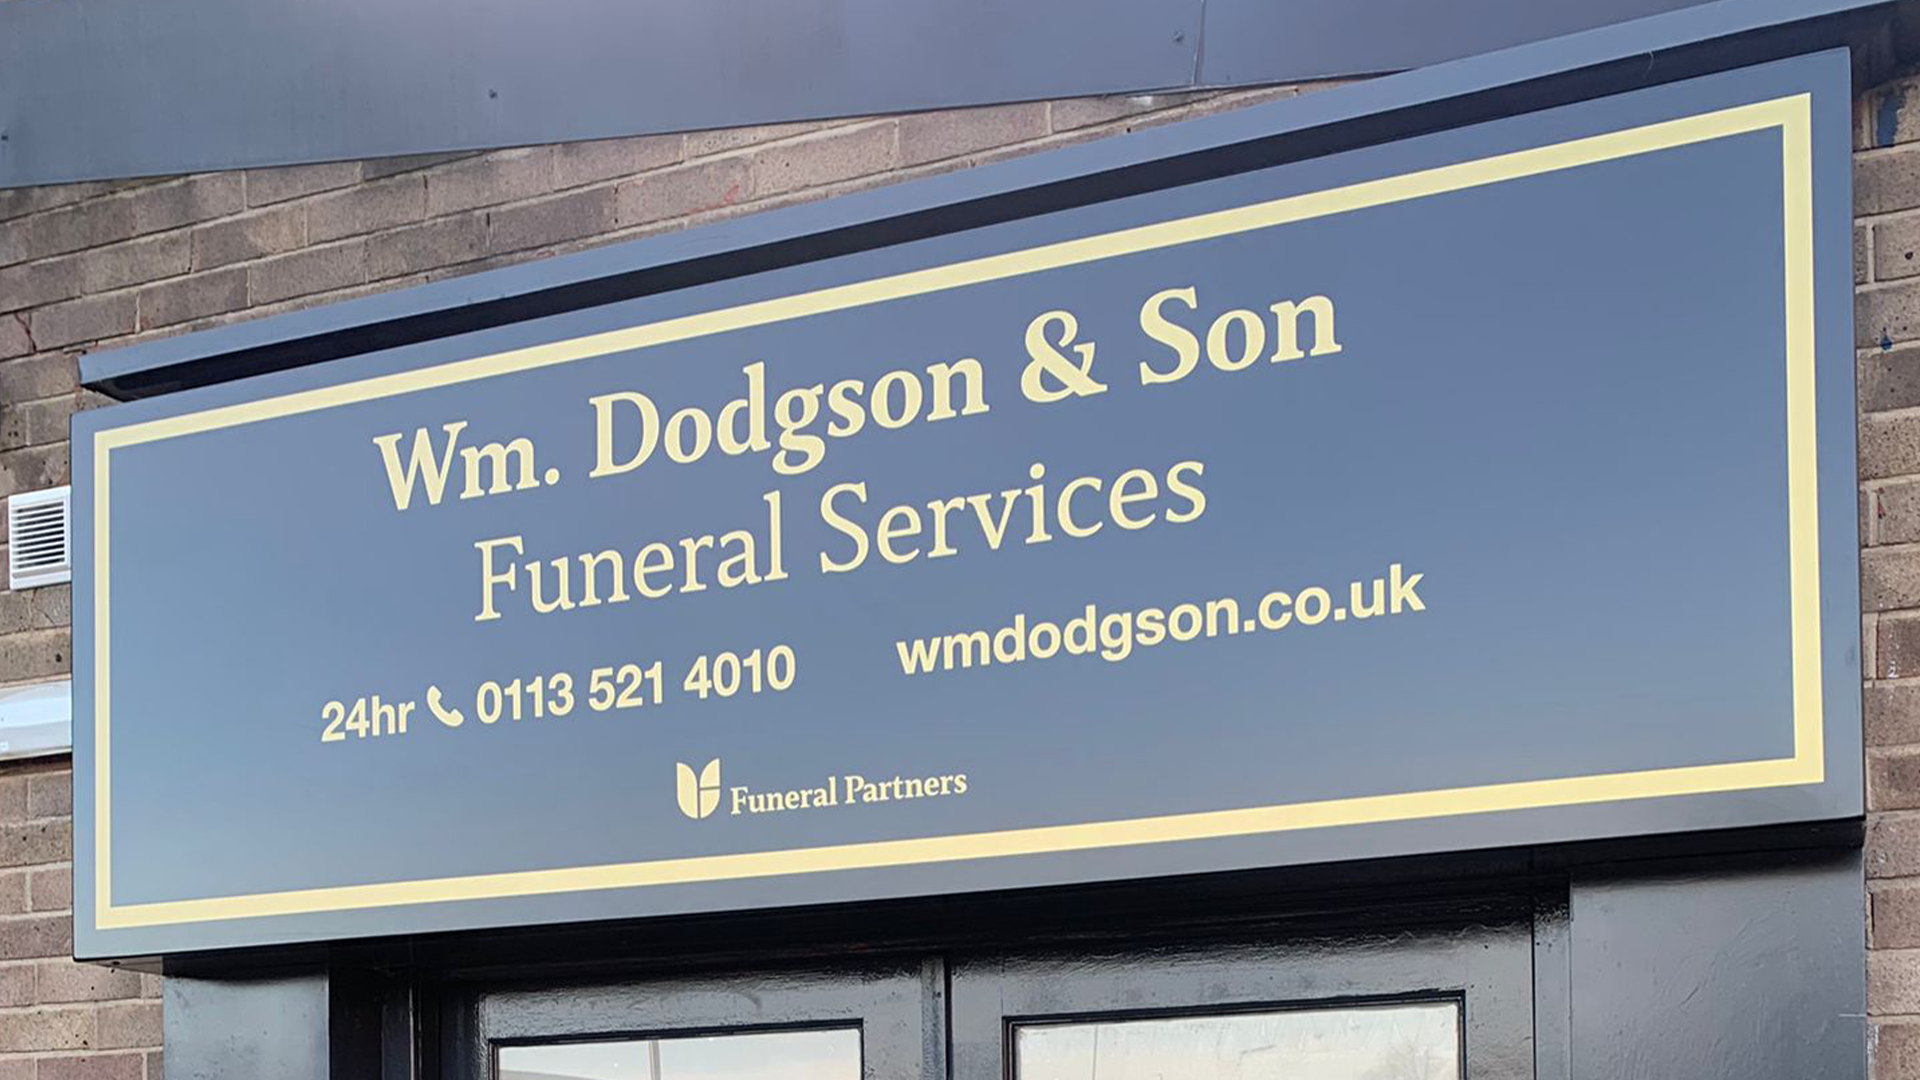 Wm. Dodgson & Son Funeral Services Leeds 01138 874755